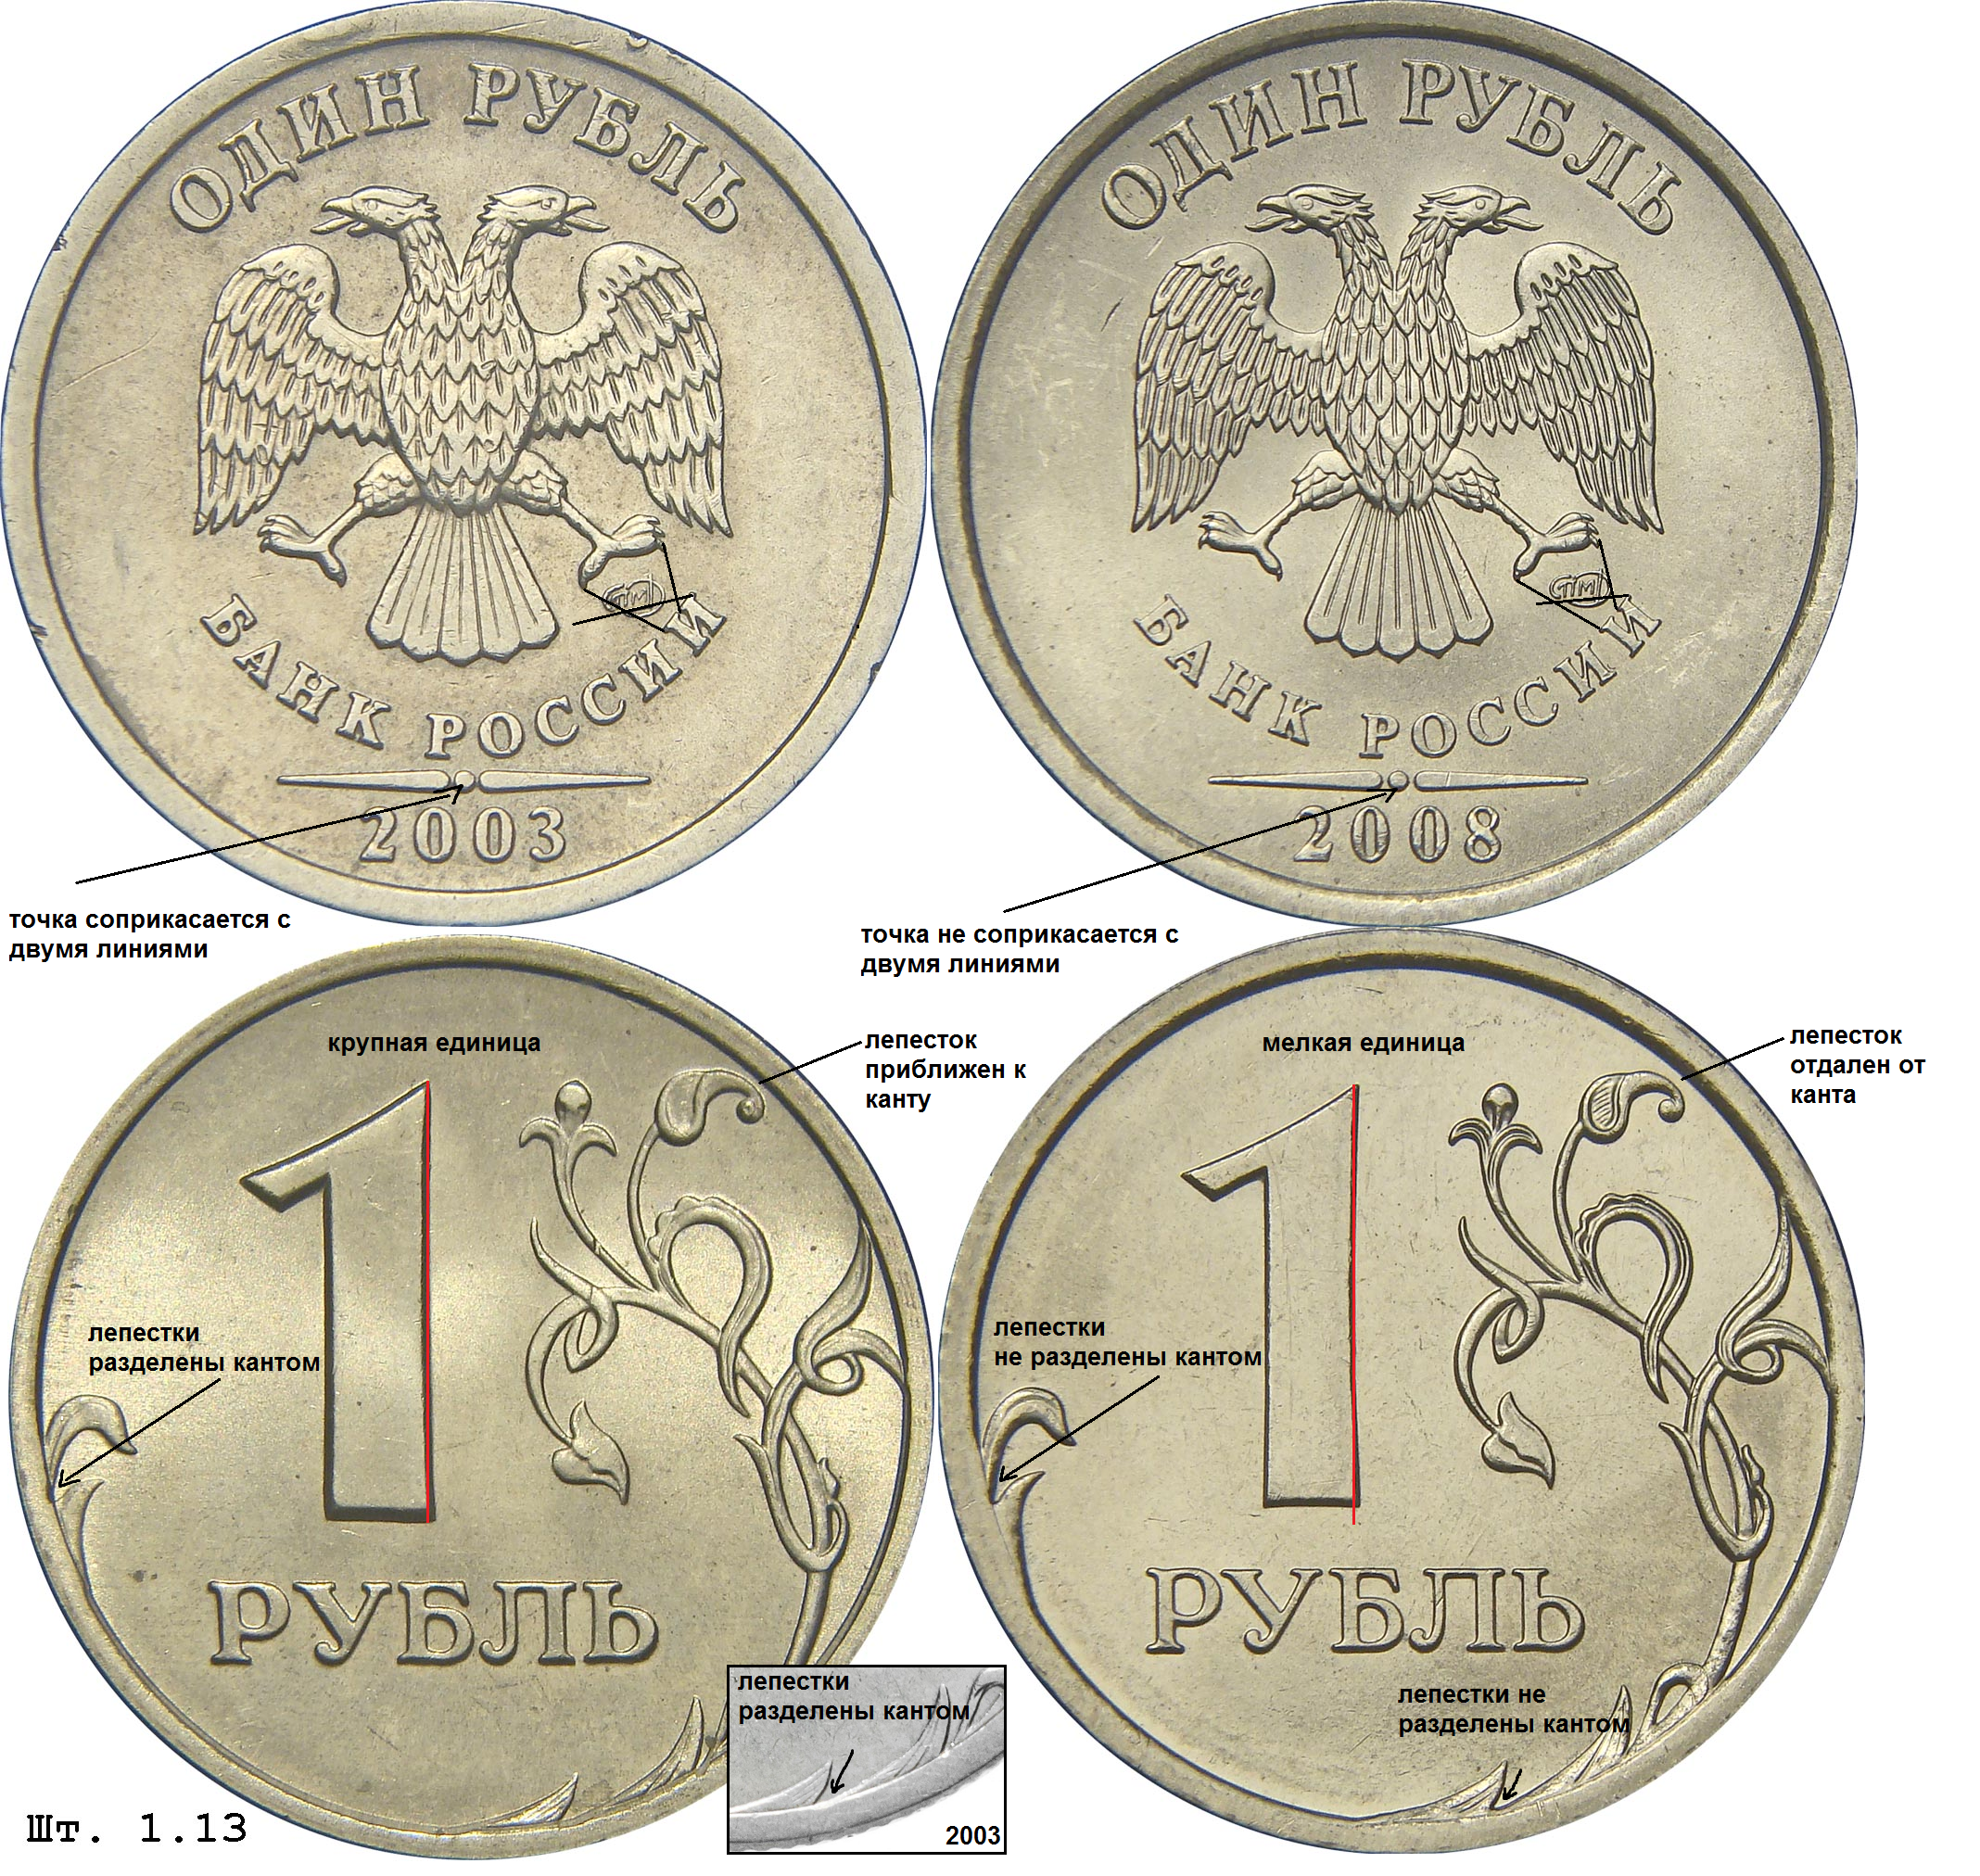 Редкие монеты. Редкие русские монеты. Самые редкие монеты России. Самые дорогие монеты 1 рубль.